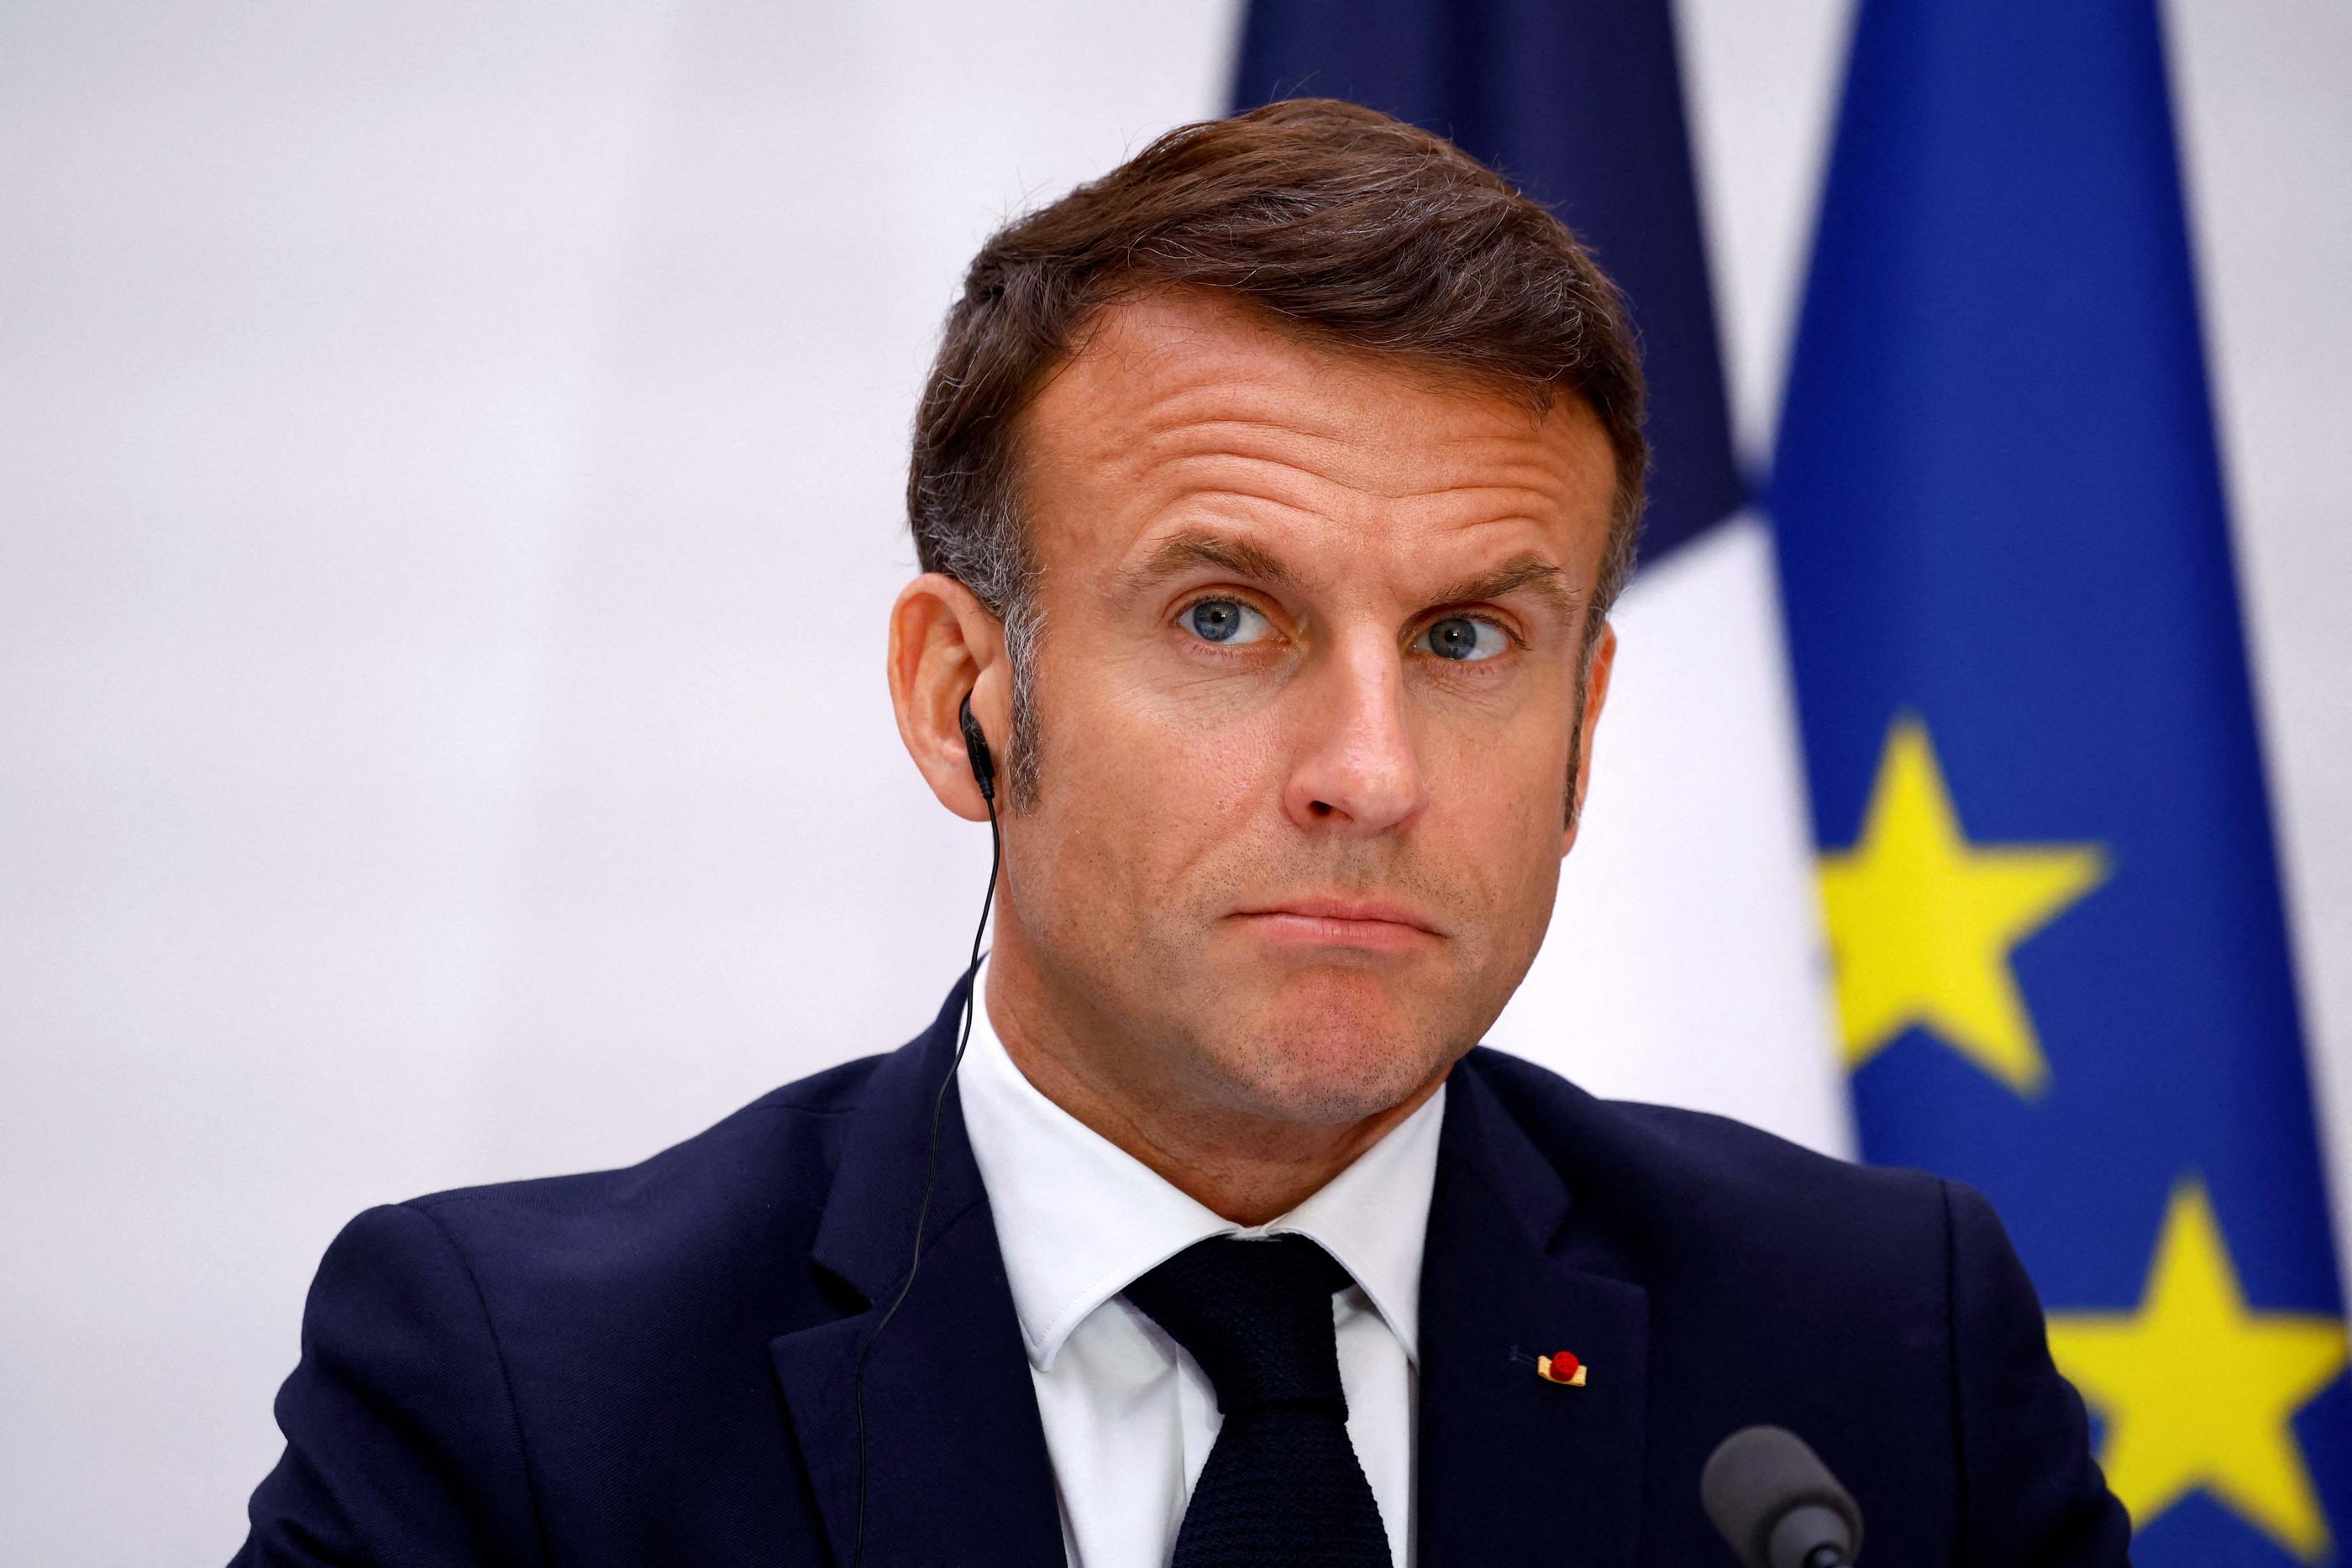 Emmanuel Macron tenait ce lundi une conférence de presse à l'occasion de la visite de Xi Jinping en France. AFP / SARAH MEYSSONNIER